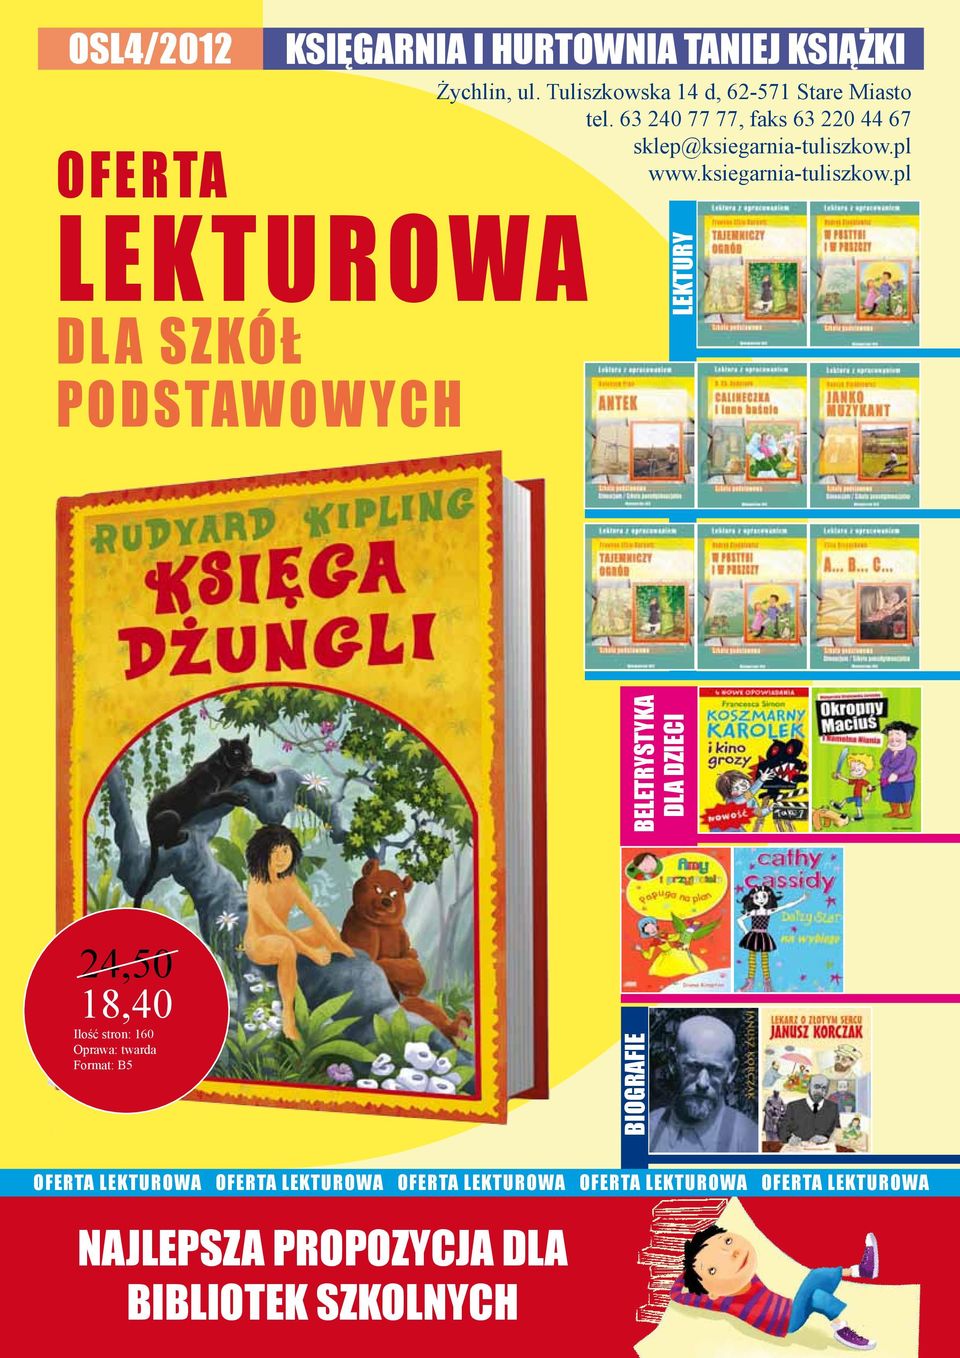 pl www.ksiegarnia-tuliszkow.